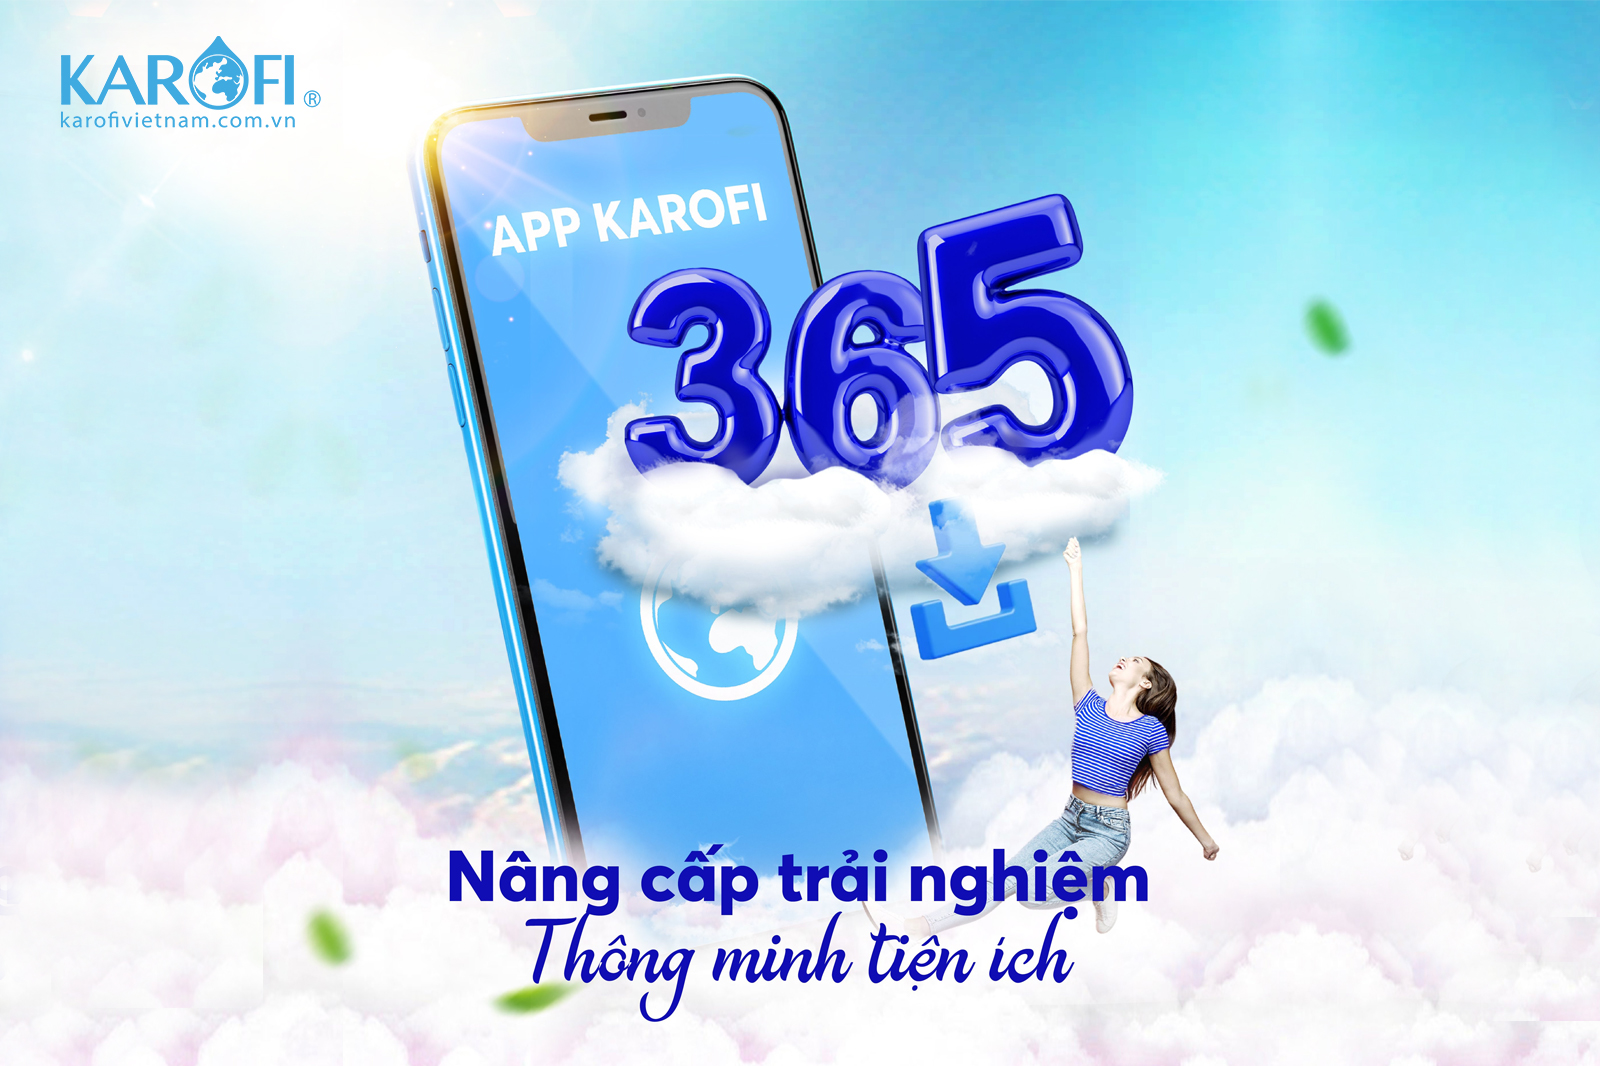 Karofi 365 - quản lý và theo dõi máy lọc nước từ xa thông qua Smartphone